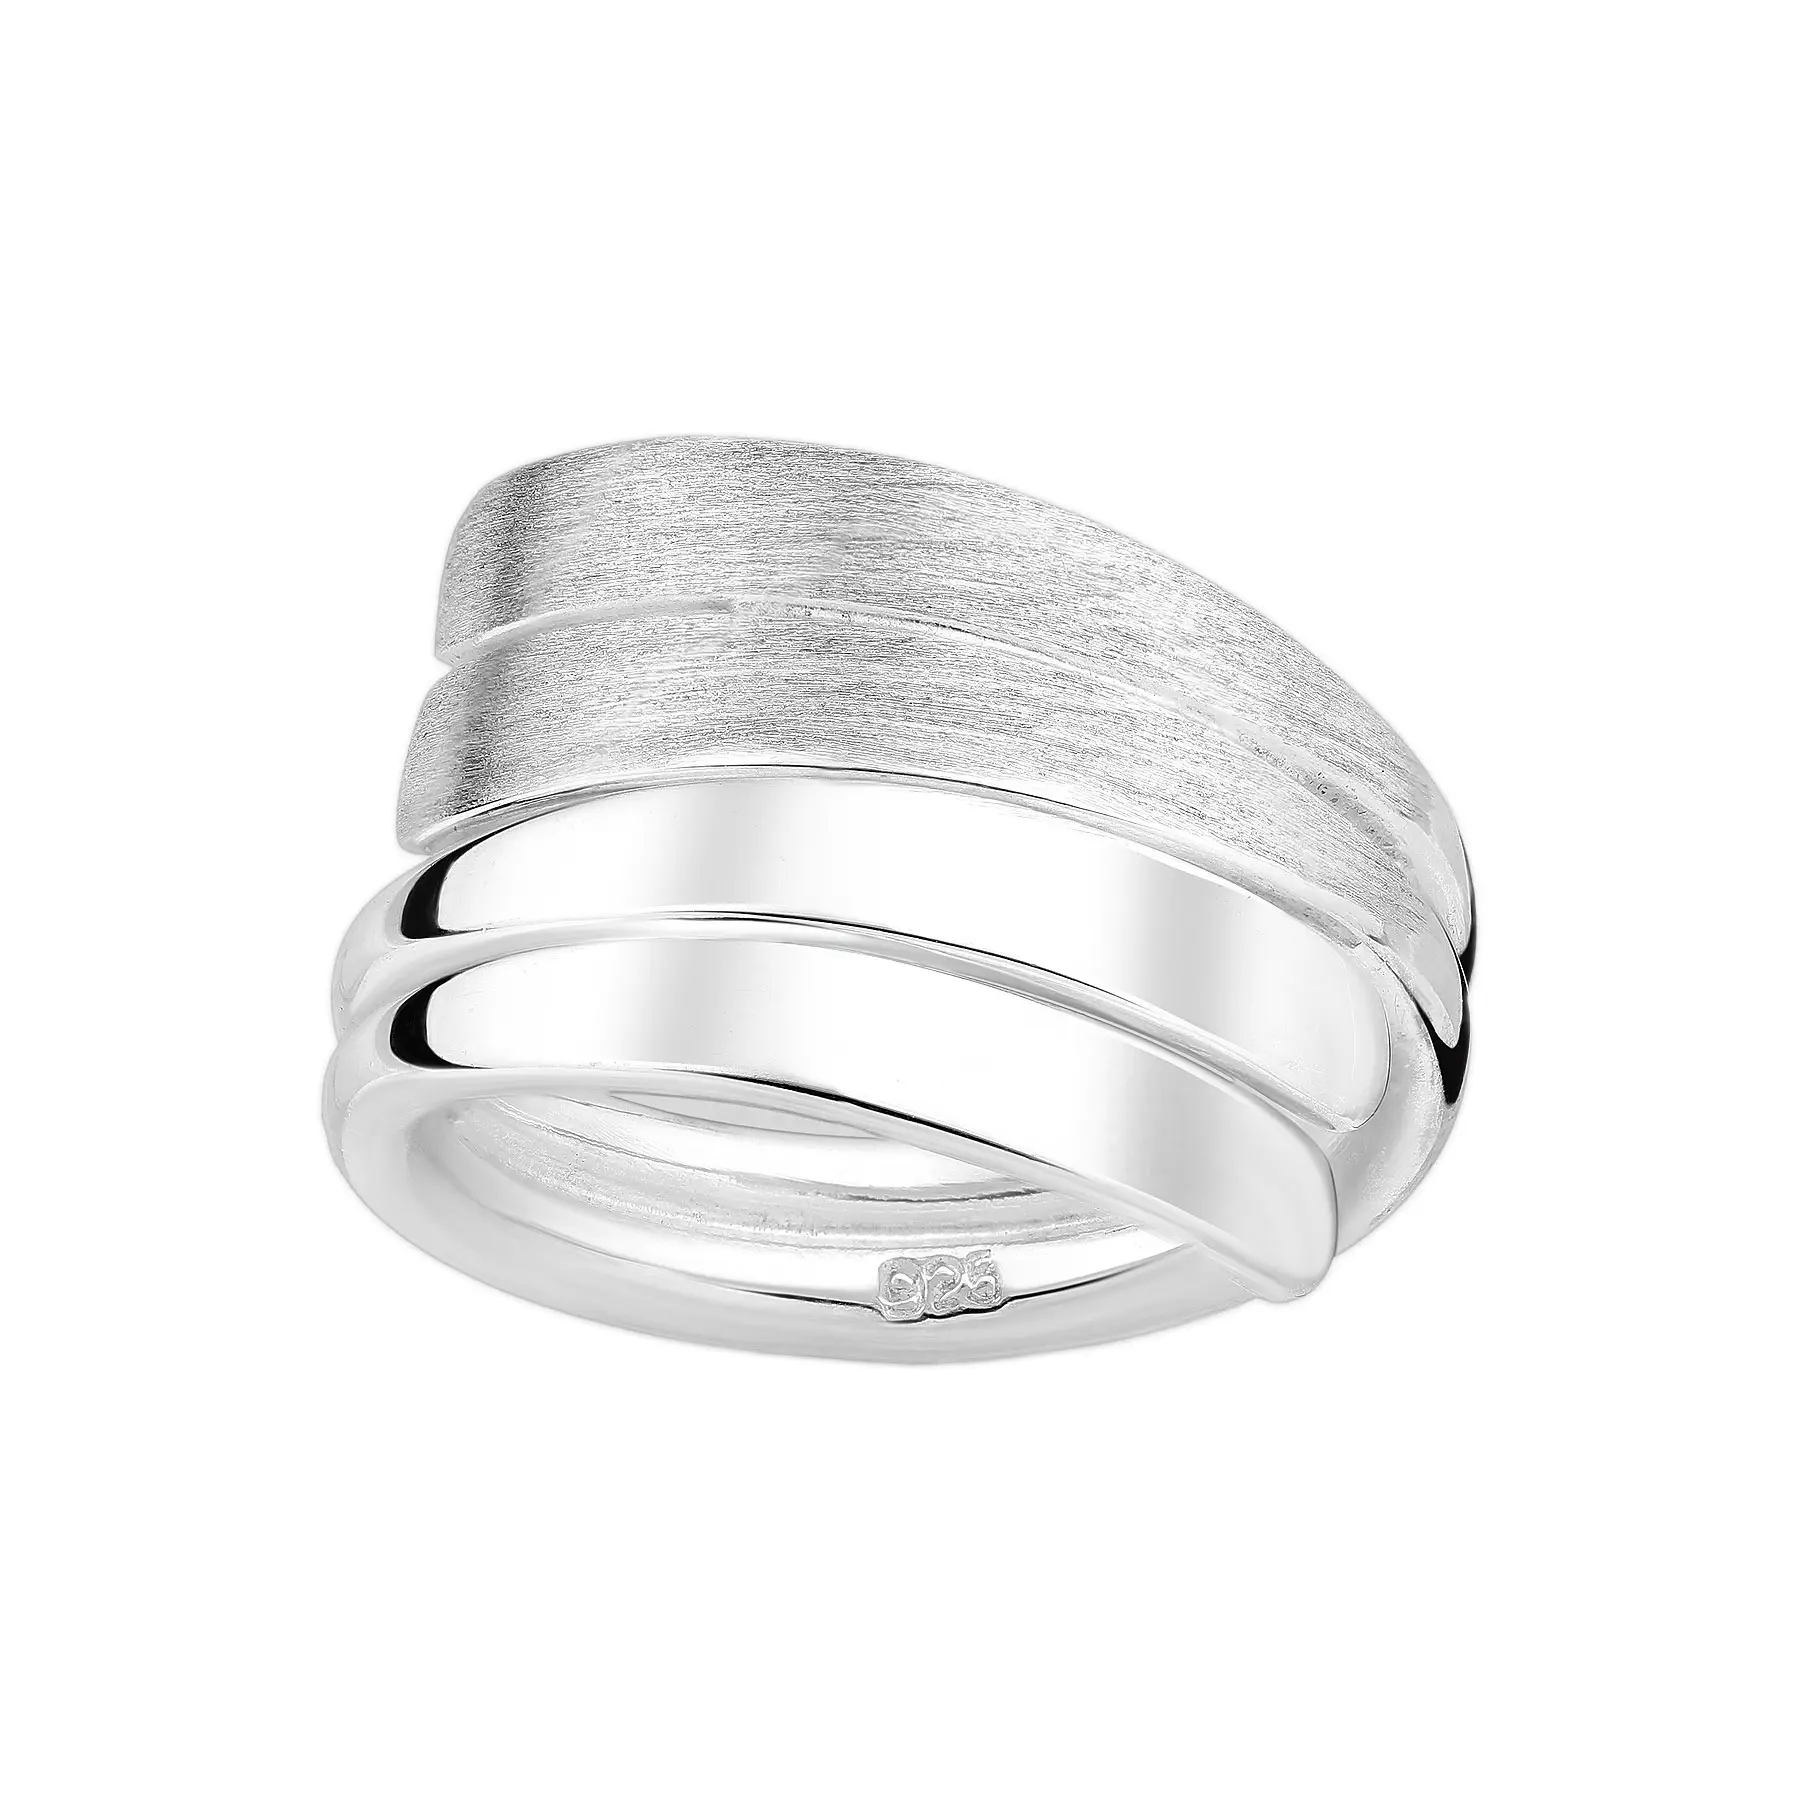 Efektowny matowany srebrny pierścionek - Europa 11, US 6